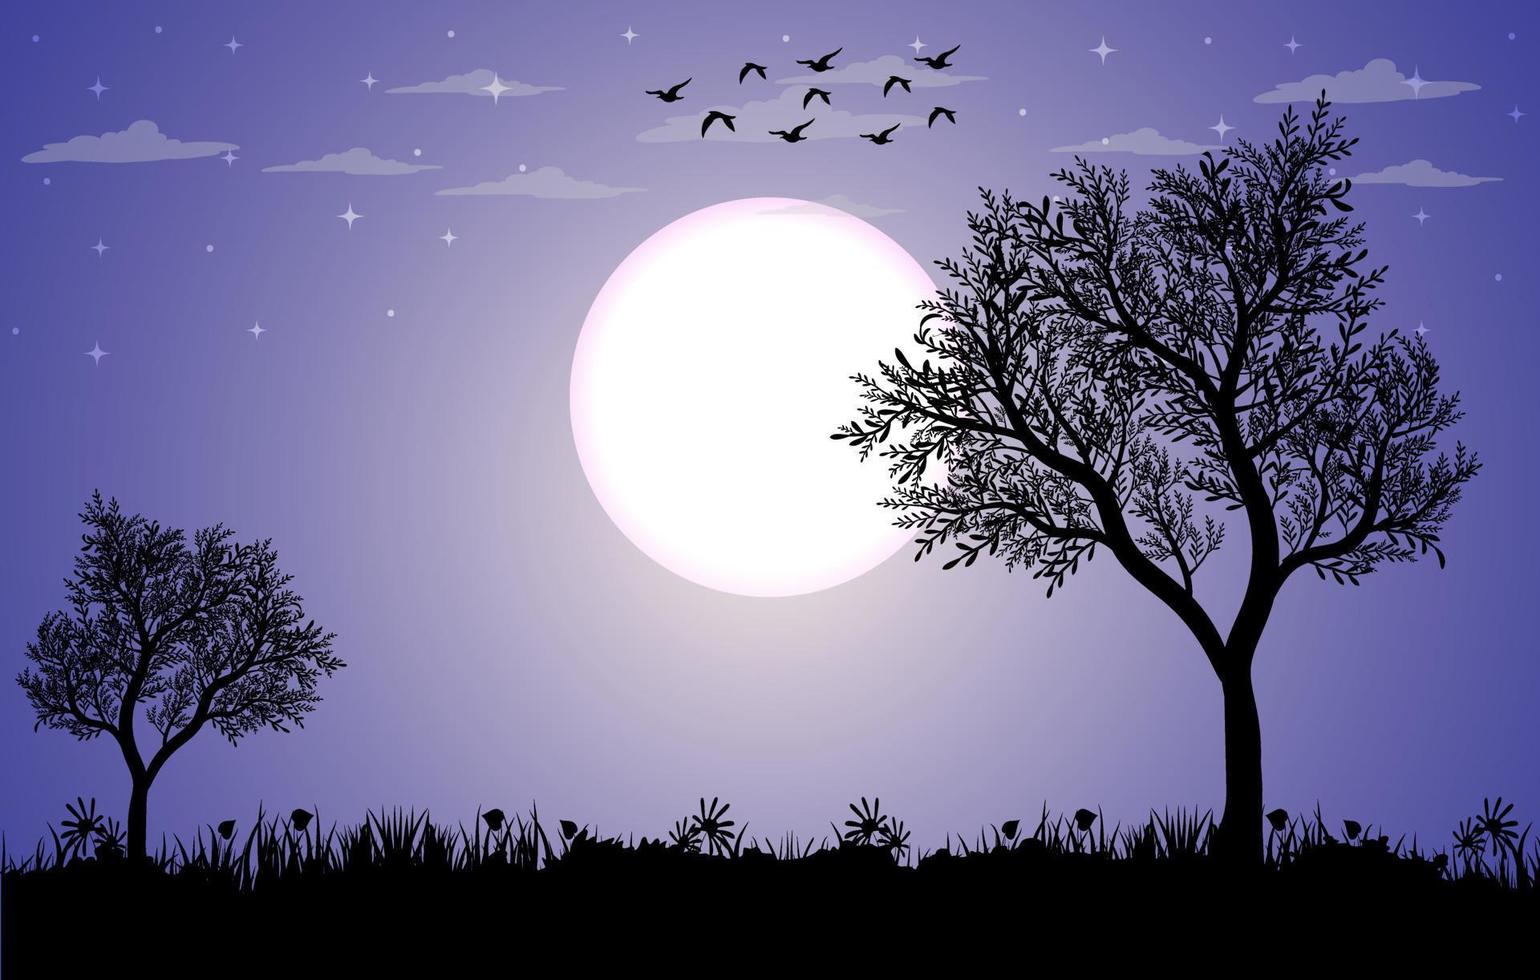 schöner Mondschein-Landschaftshintergrund kostenlos, Landschaftsvektorillustration, Mondscheinlandschaft mit Sternen am Nachthimmel, schöner Mitternachtshintergrund vektor